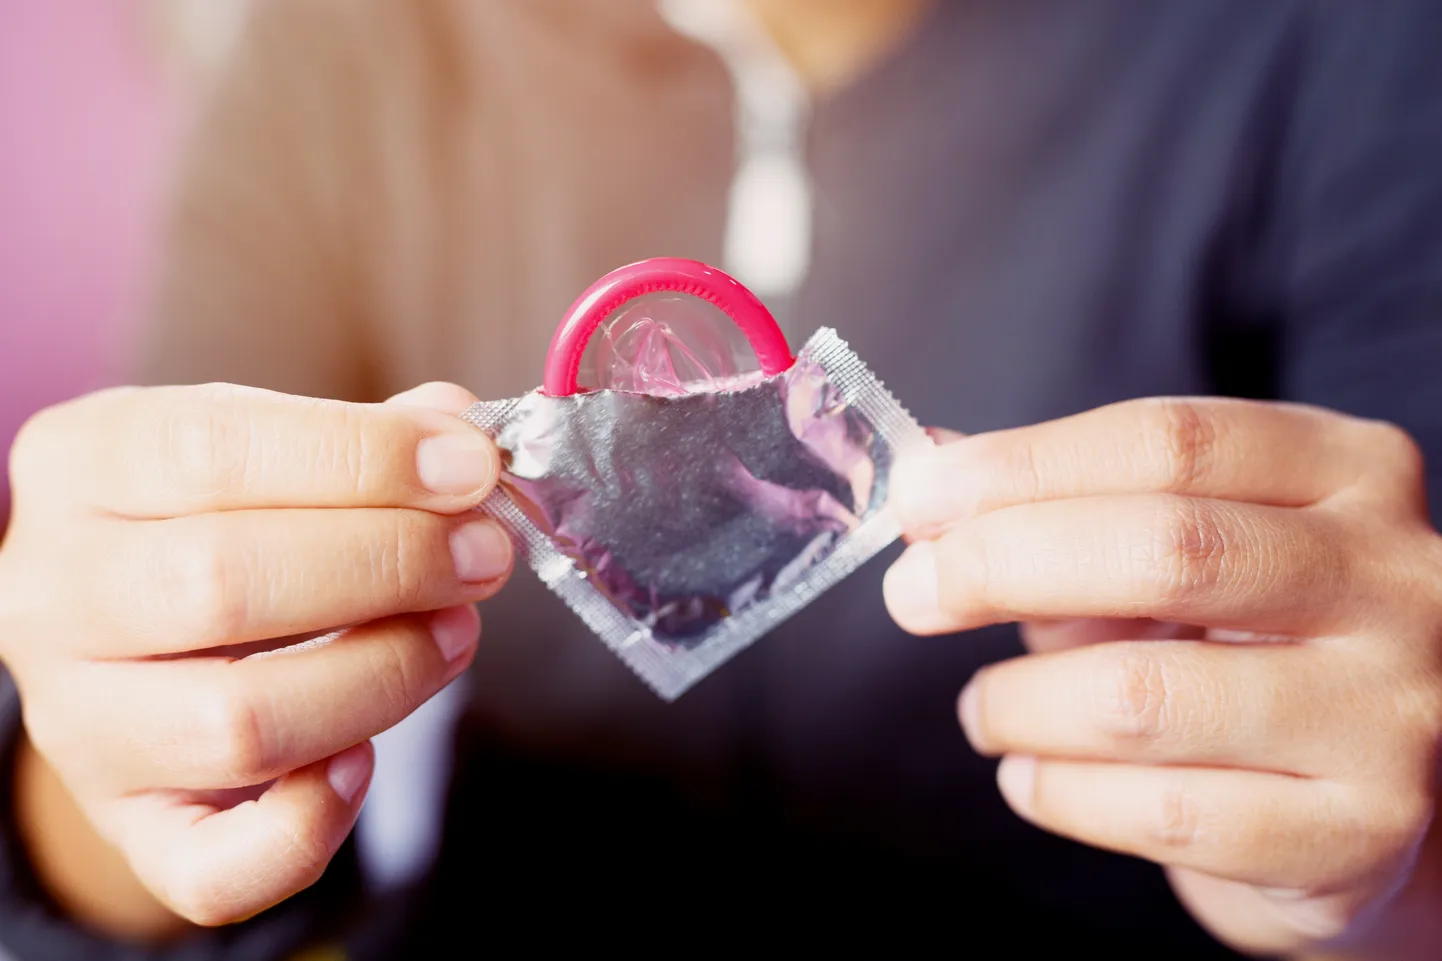 Prantsusmaa pakub 18-25-aastastele noortele tasuta kondoome.